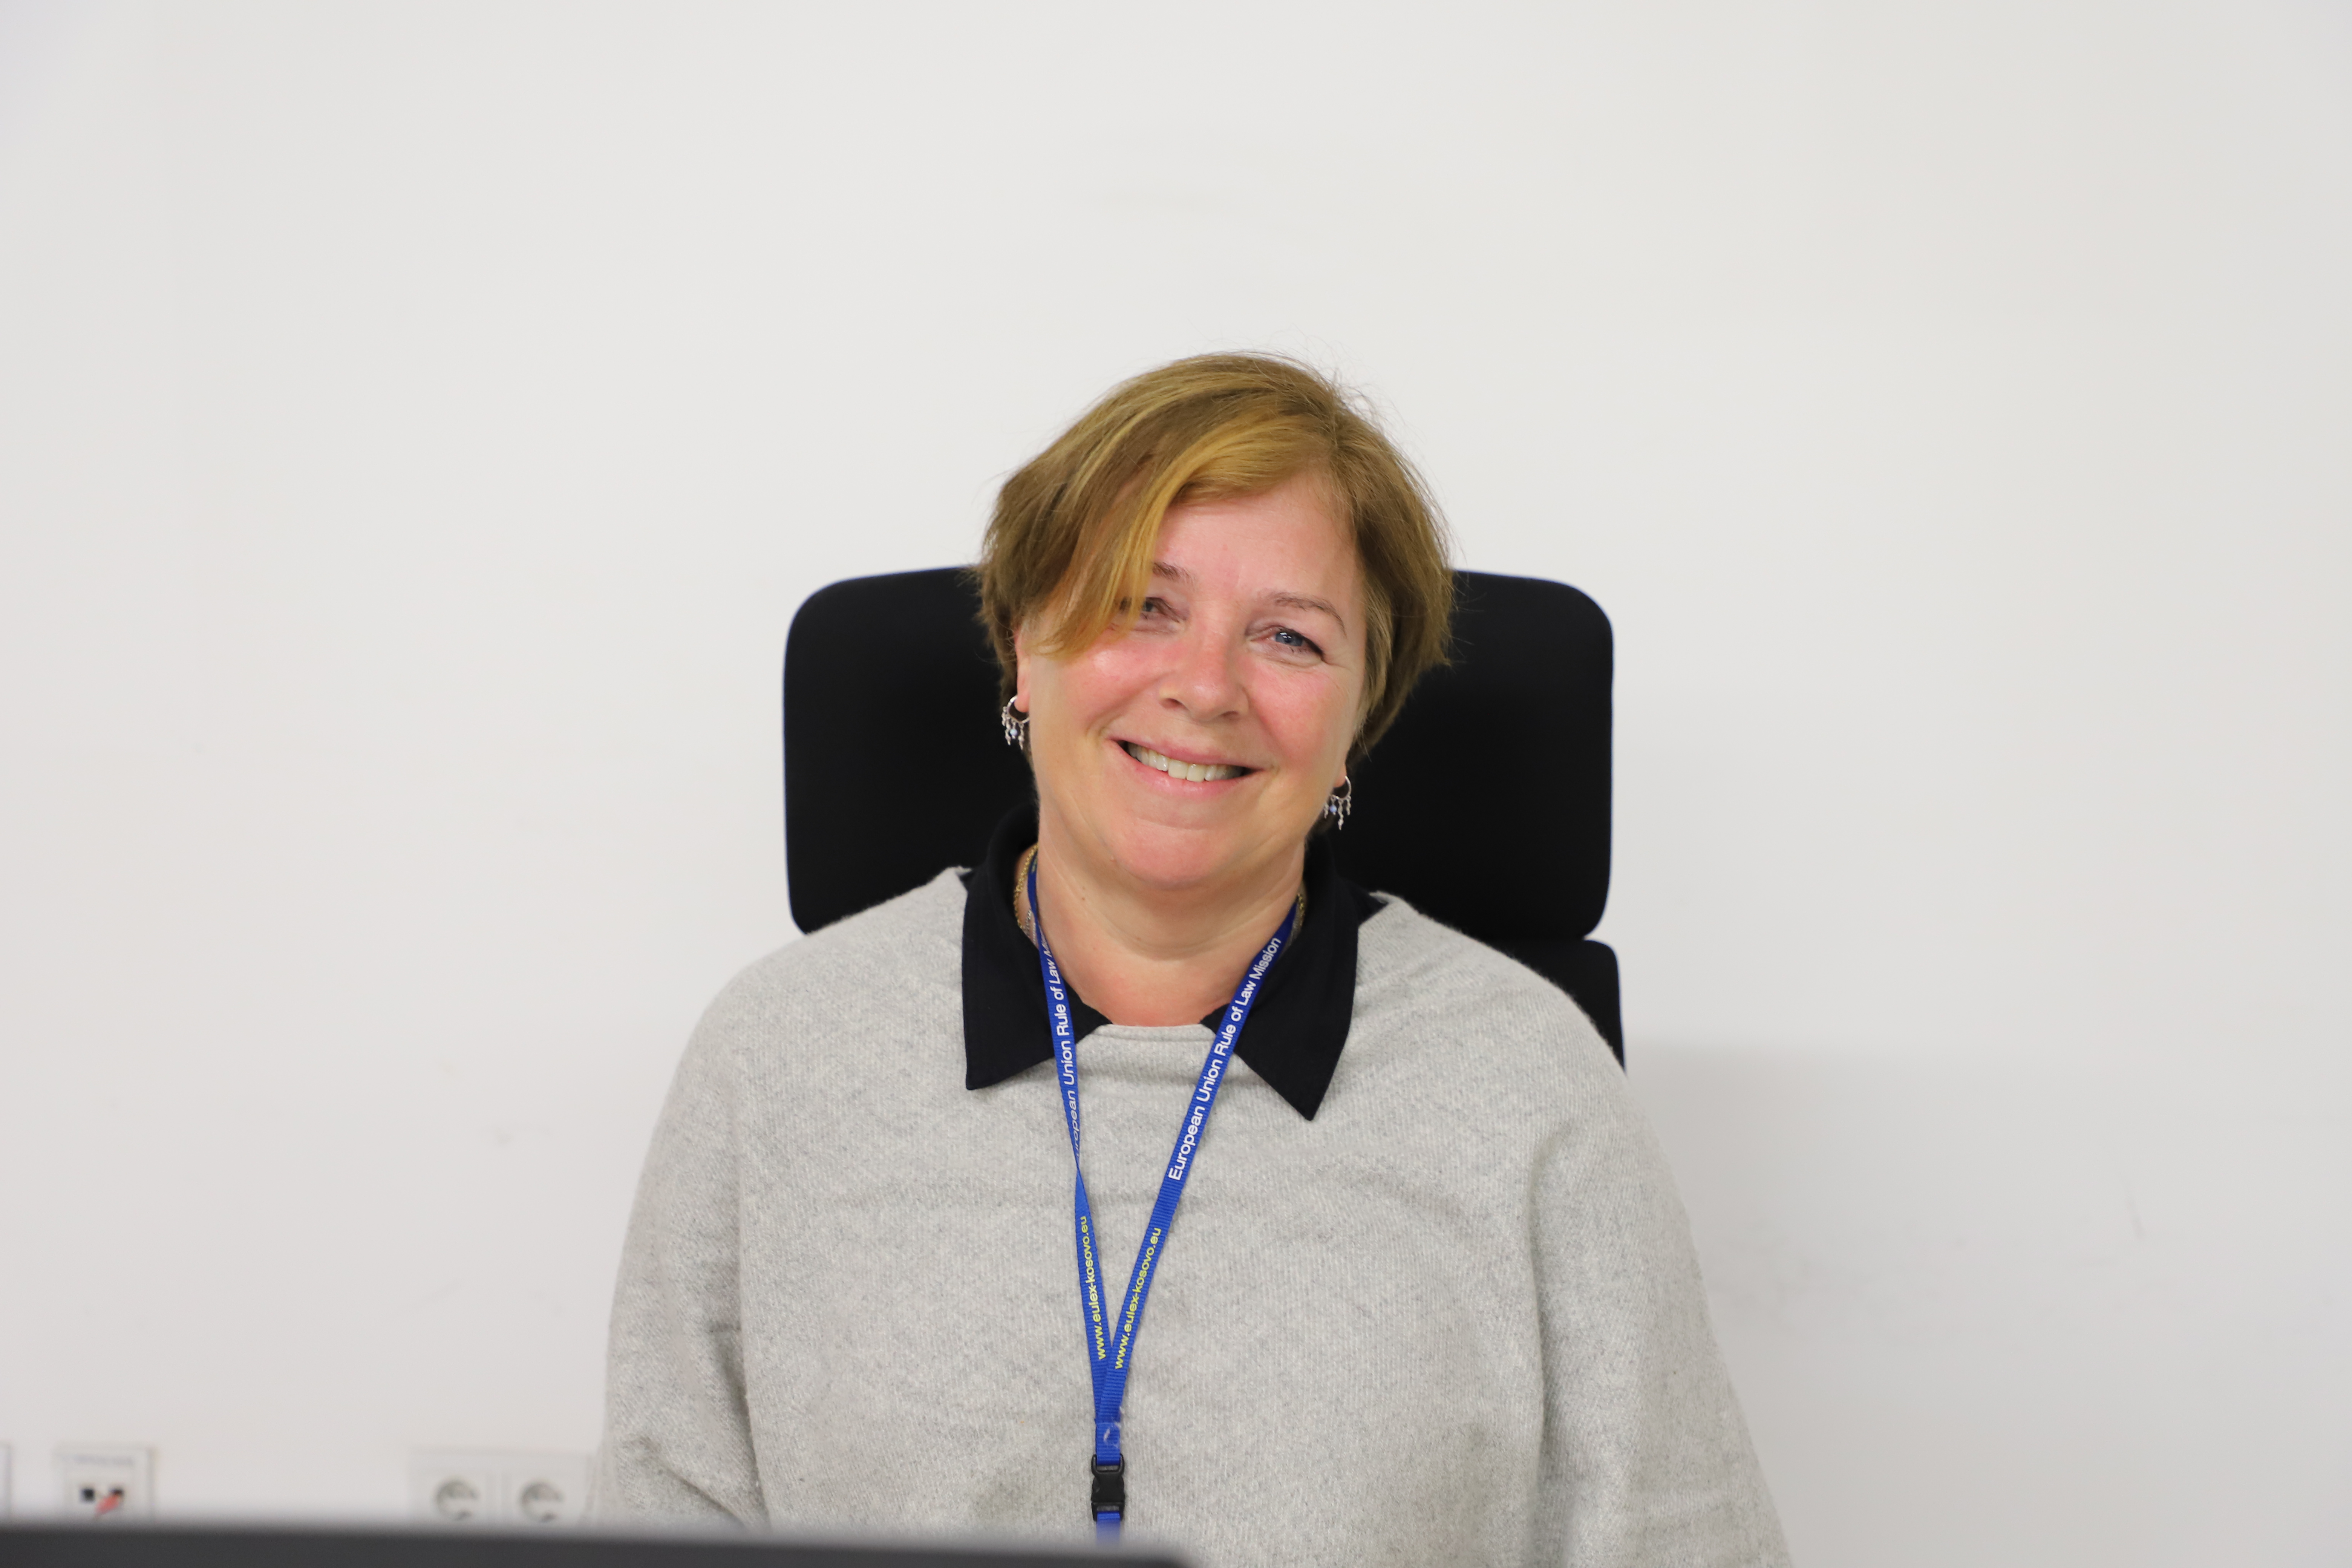 Upoznajte Heidi Heggdal, sudiju iz Norveške koja se pridružila EULEX-ovoj Jedinici za nadgledanja predmeta